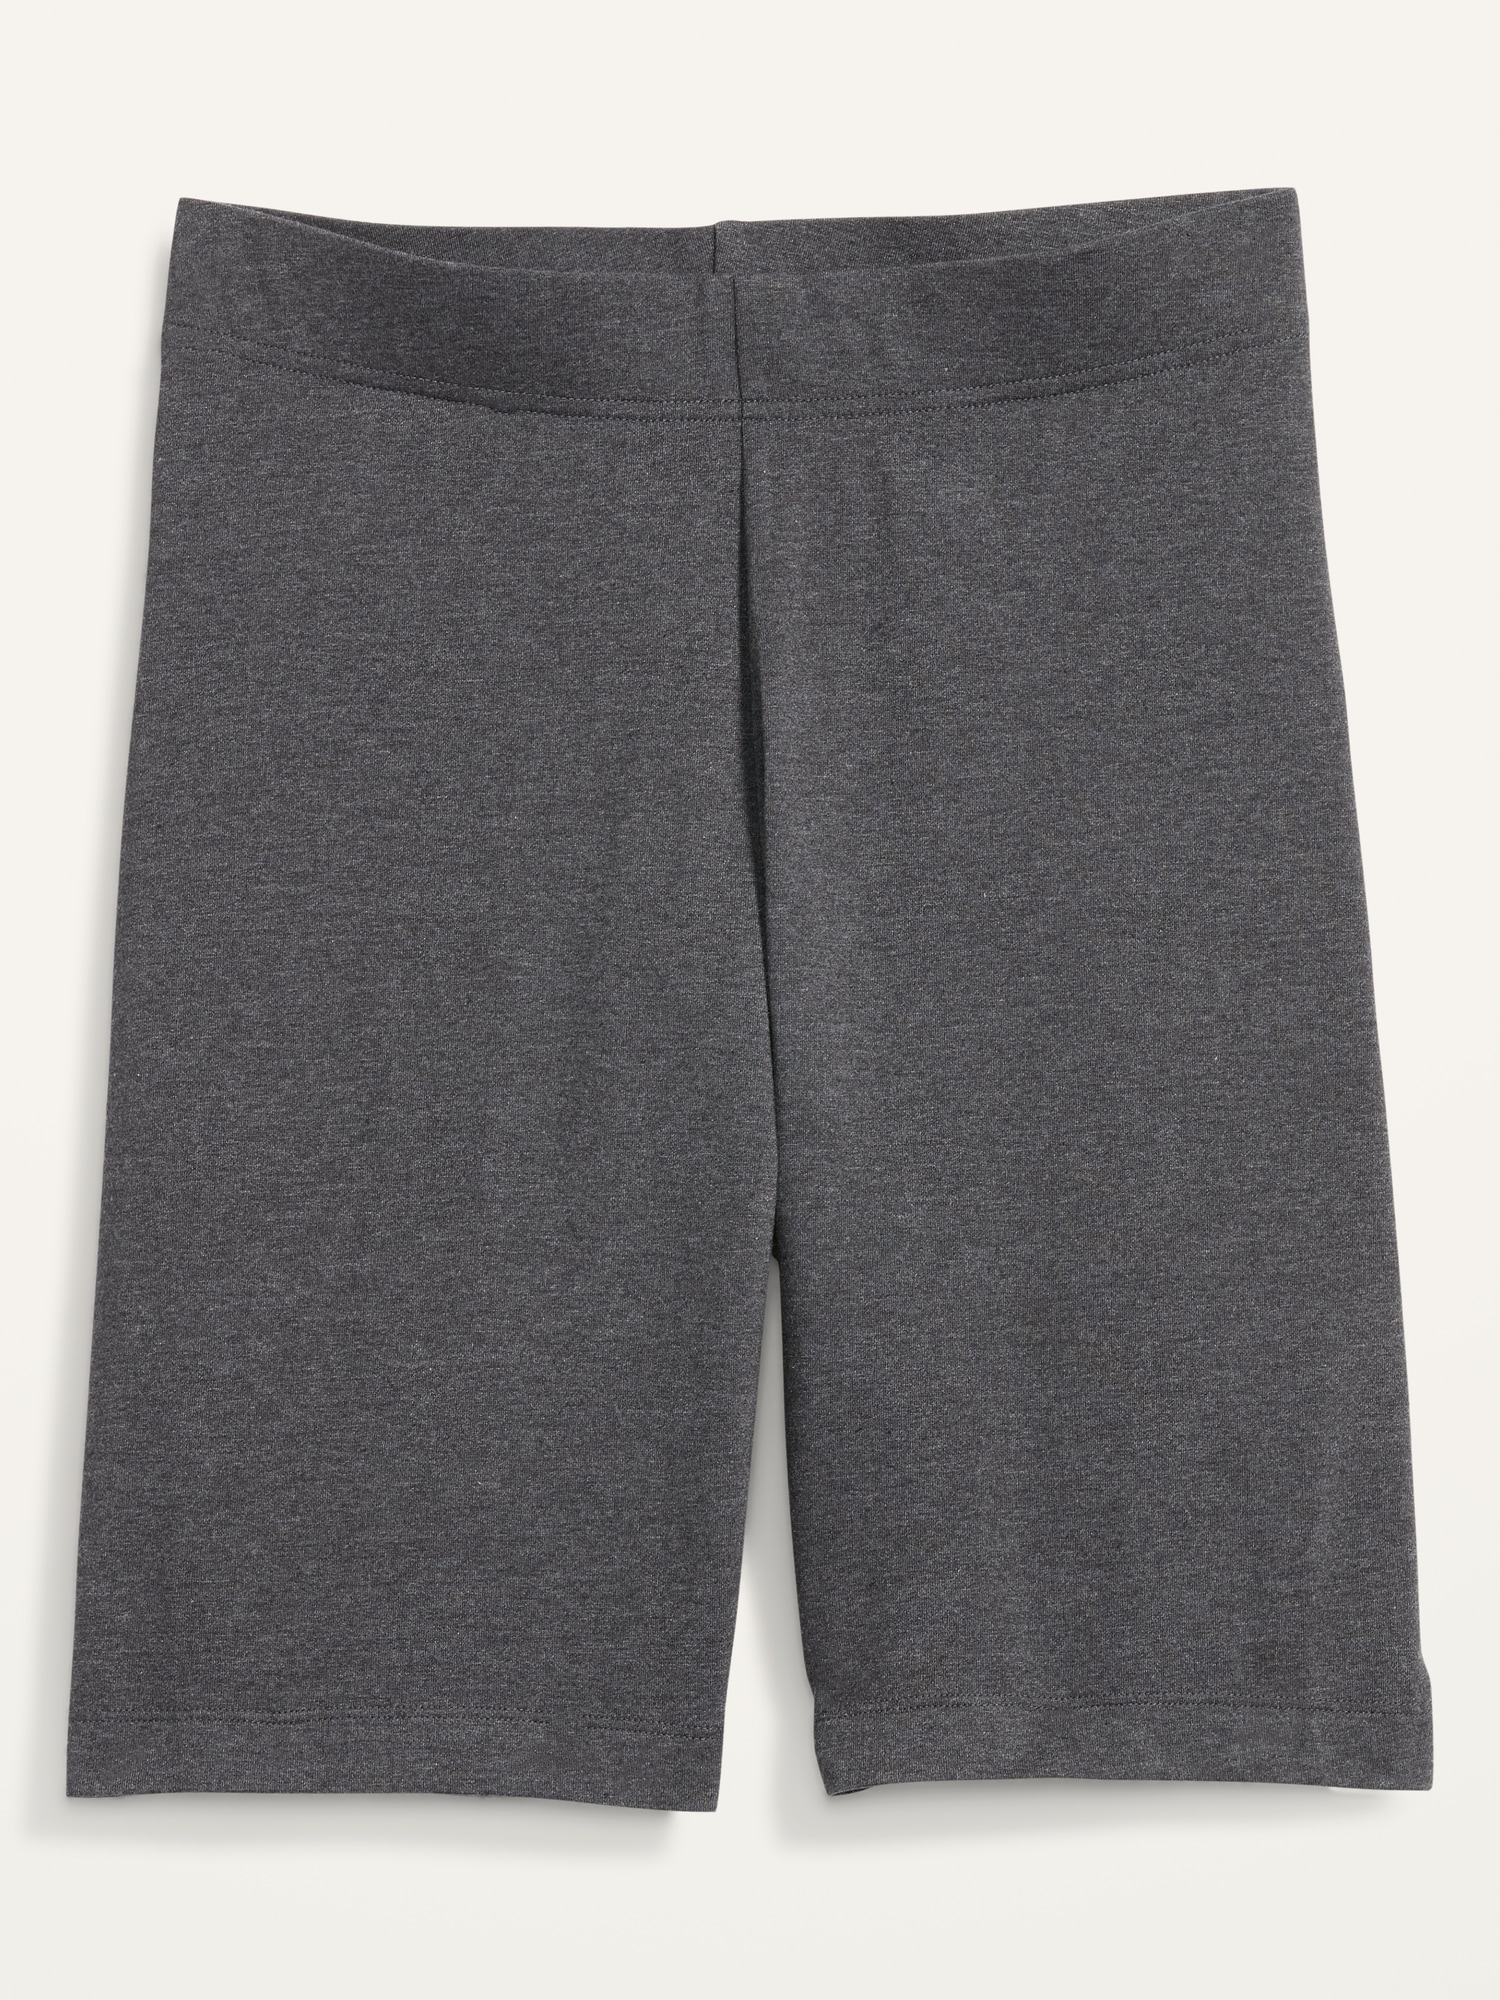 High-Waisted Biker Shorts -- 8-inch inseam Hot Deal